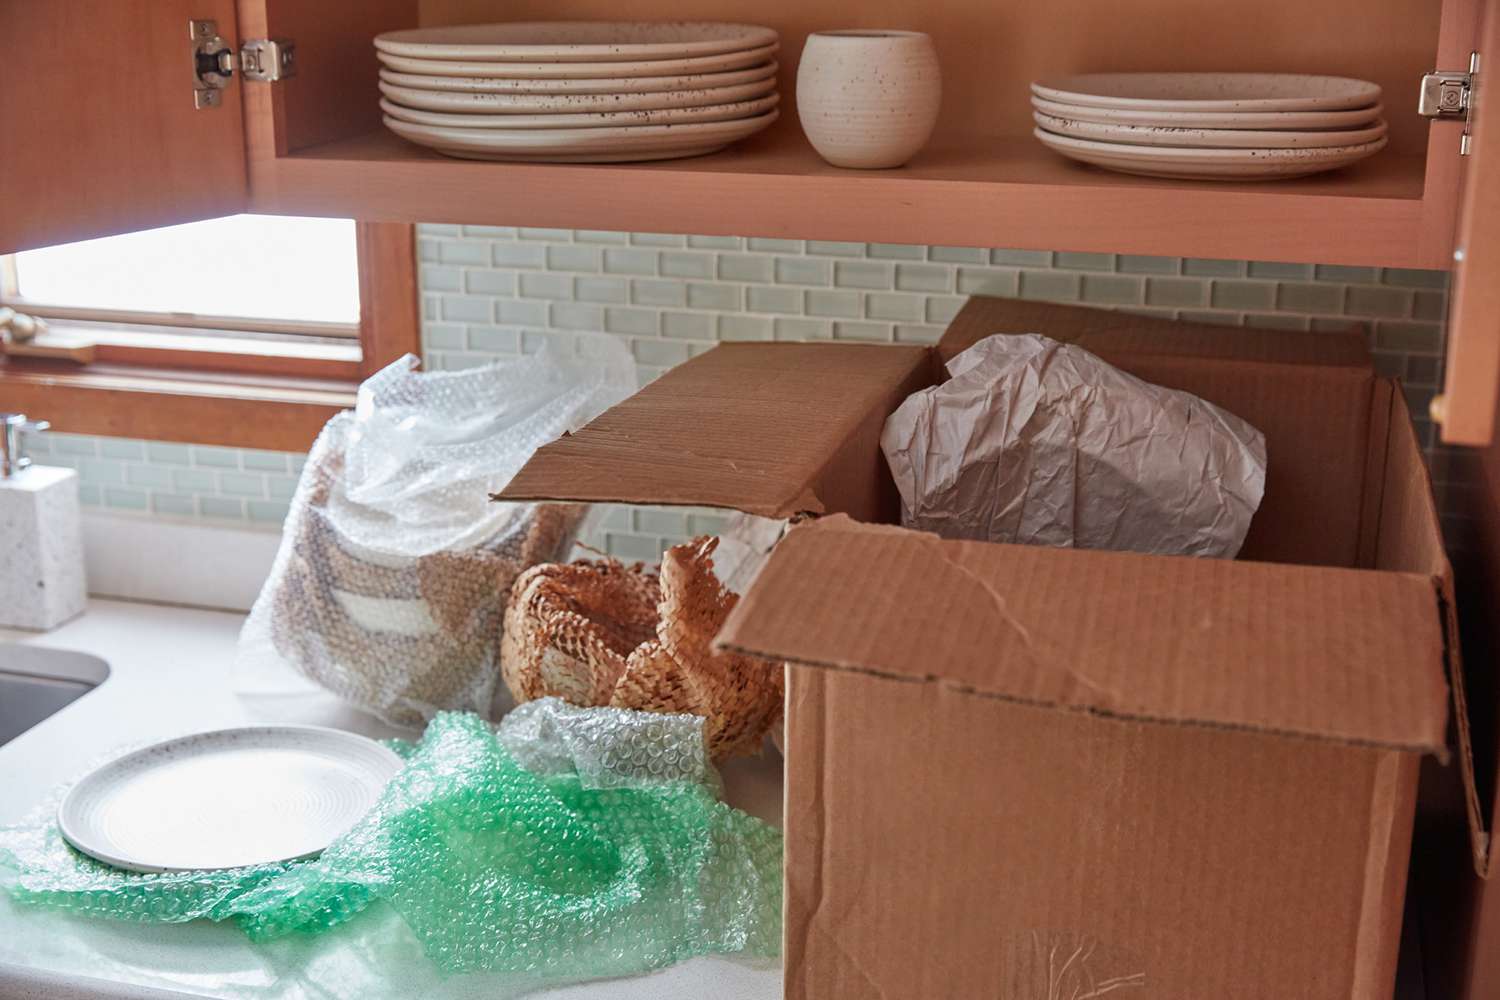 Armarios de cocina limpios de vajilla y colocados en una caja de cartón